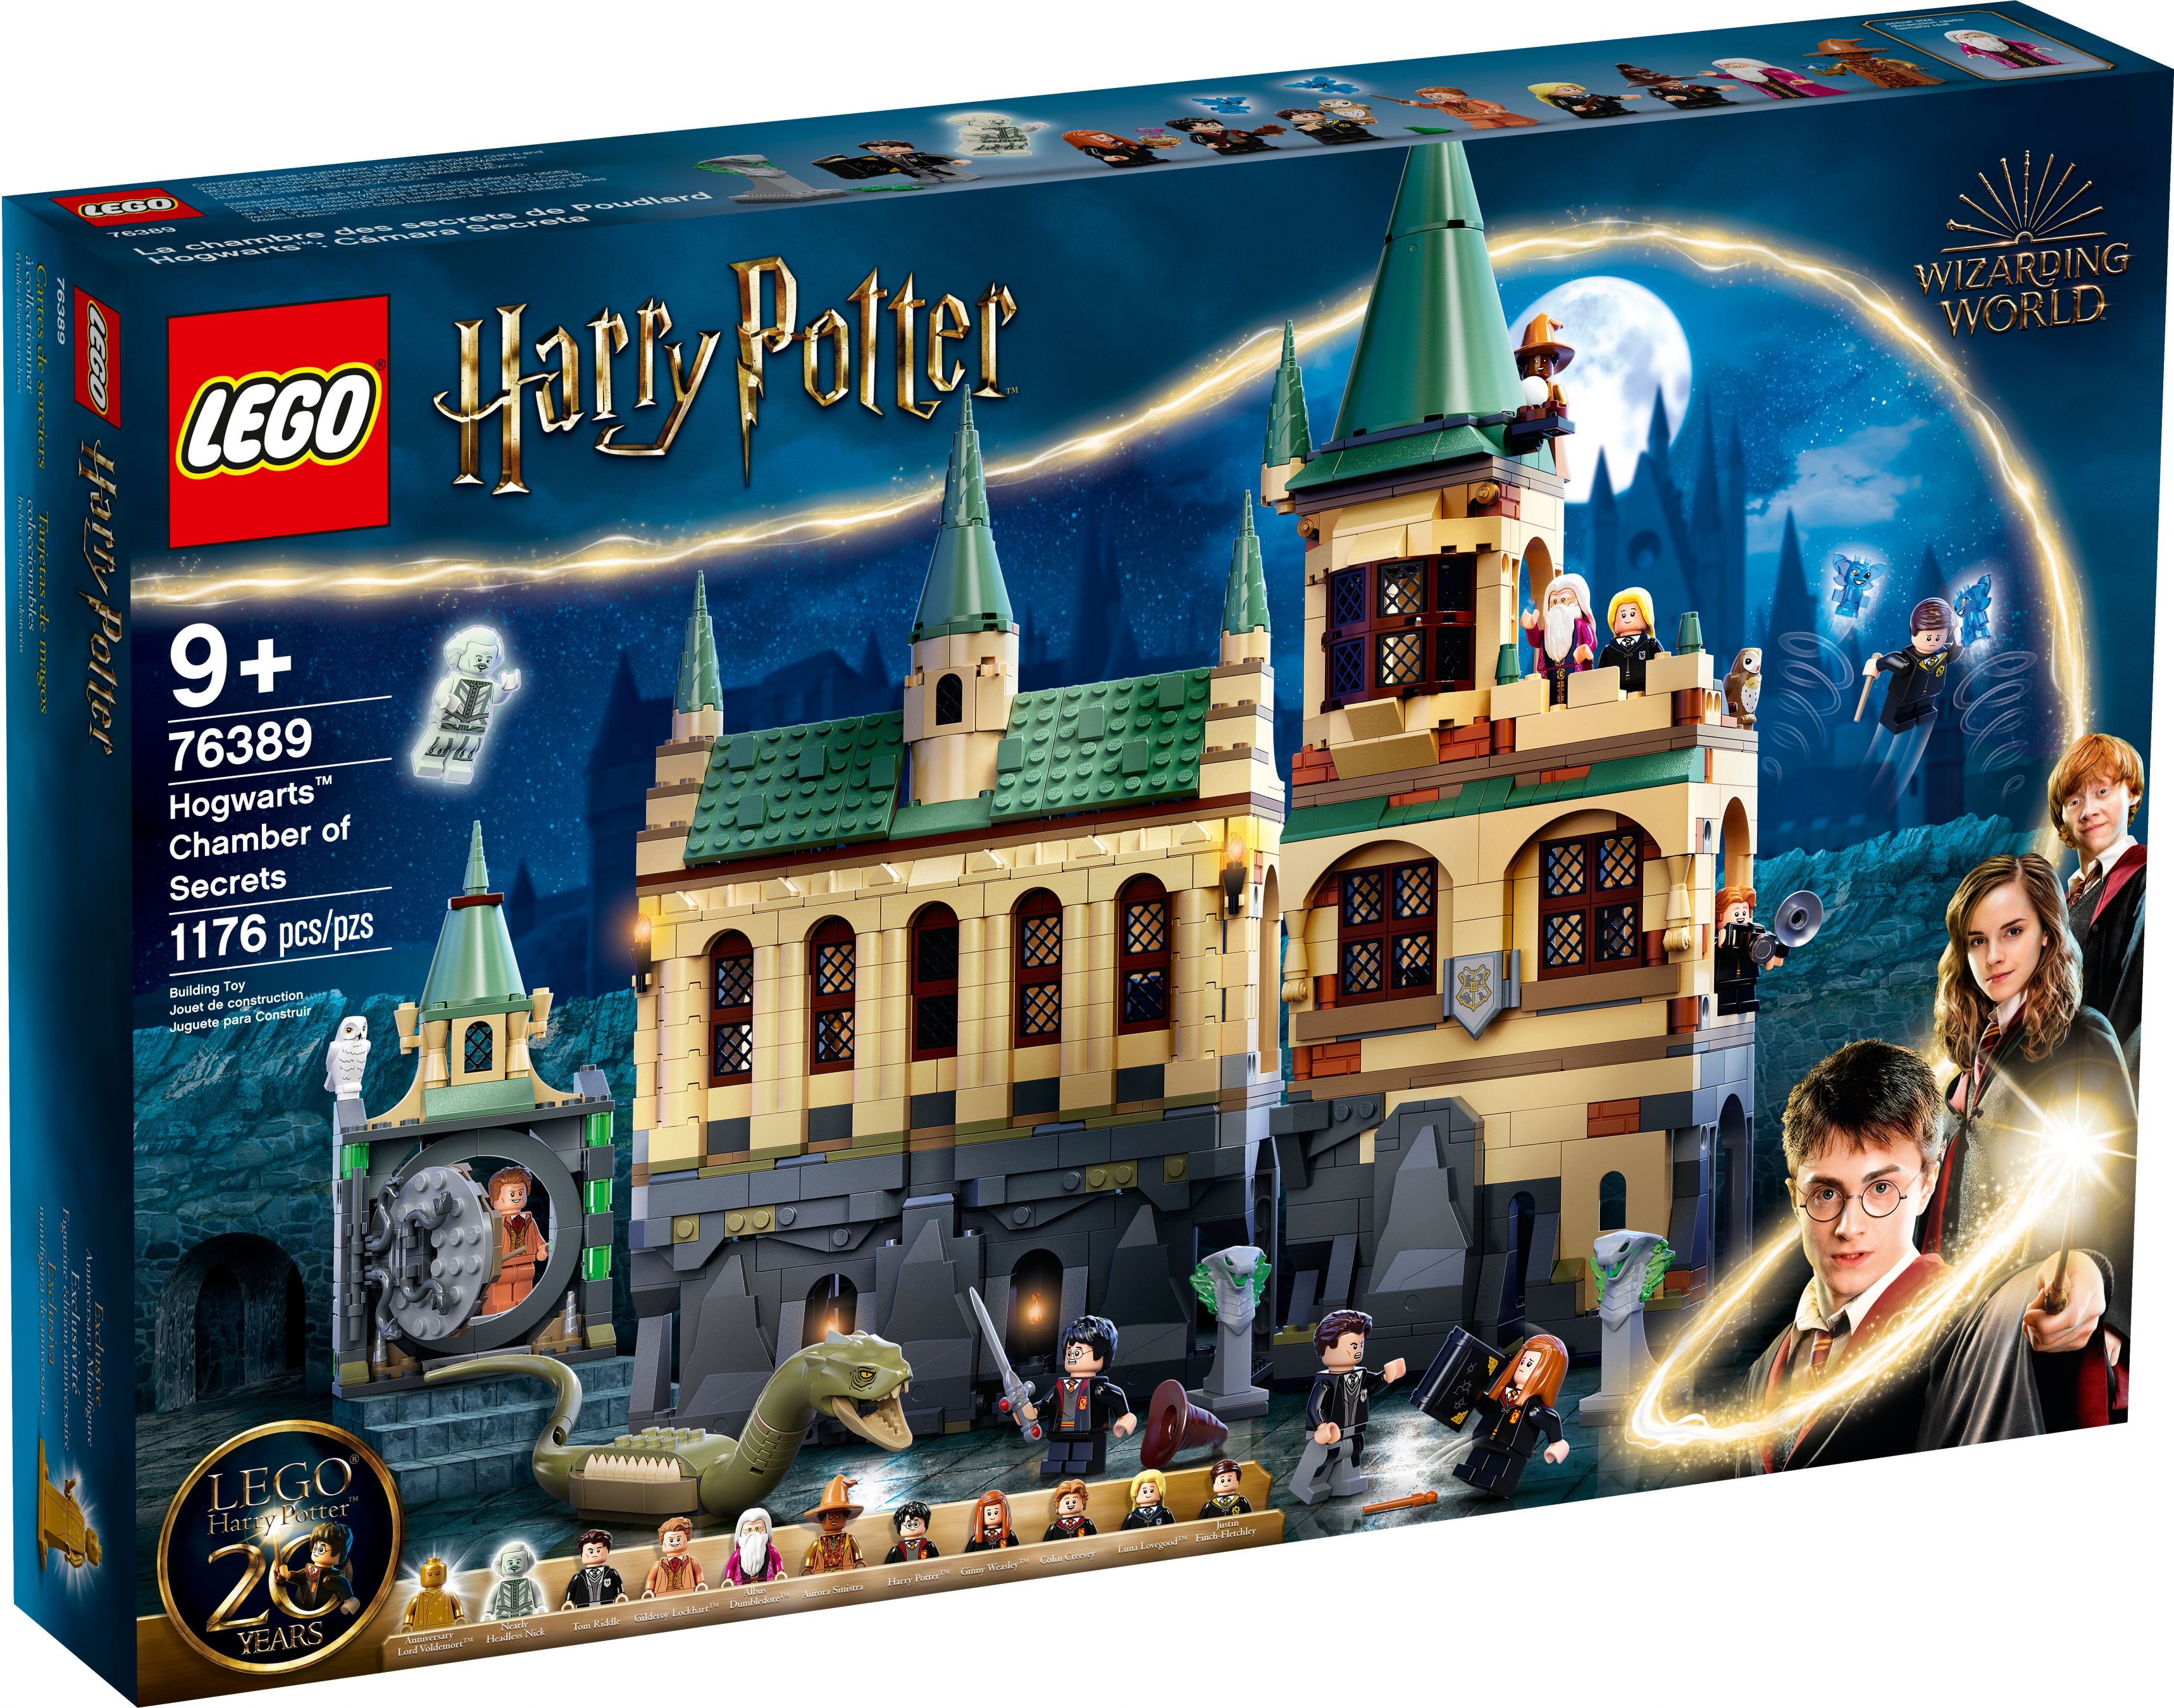 LEGO Harry Potter 76389 Hogwarts™ Kammer des Schreckens LEGO_76389_Box1_v39.jpg